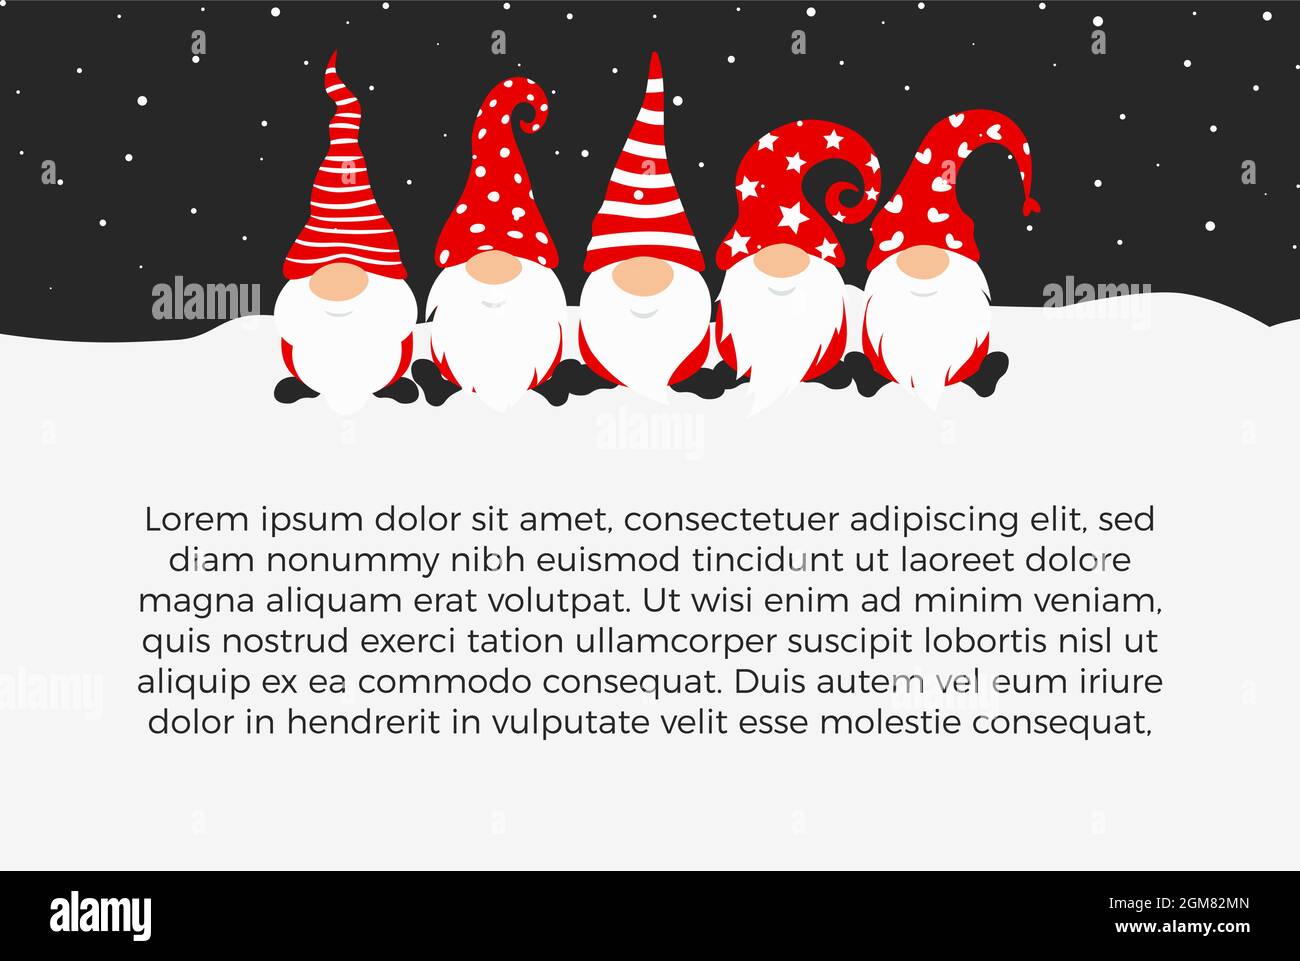 Felice anno nuovo 2022 poster design con gnomes, caratteri christmass per la decorazione delle feste di Natale, banner orizzontale di nuovo anno con testo Illustrazione Vettoriale